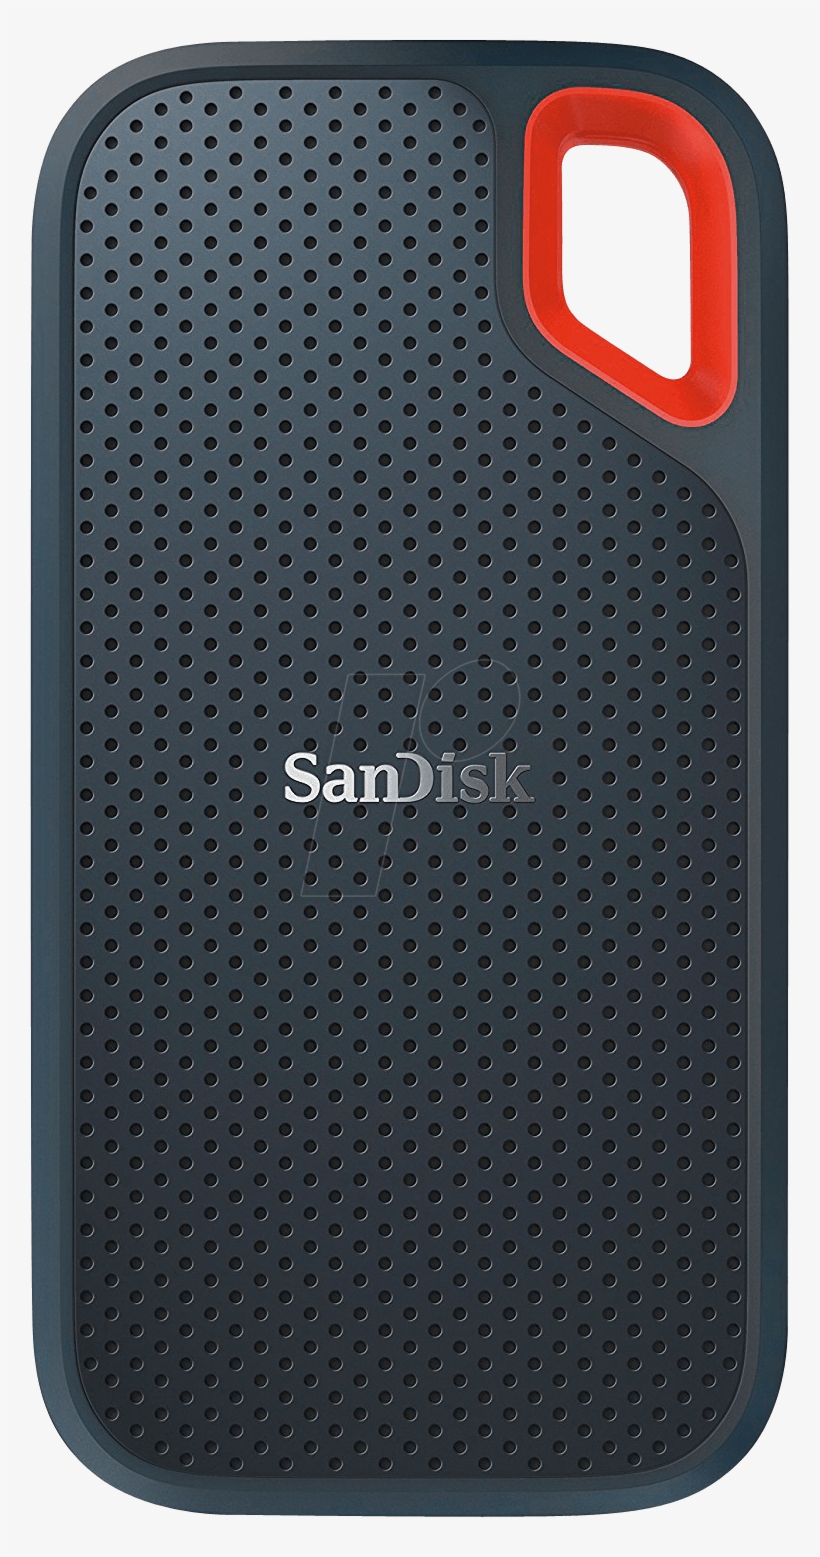 Sandisk Usb Extreme Portable Ssd 500 Gb Sandisk Sdssde60 - Sandisk 250gb Extreme Portable Ssd, transparent png #4841703